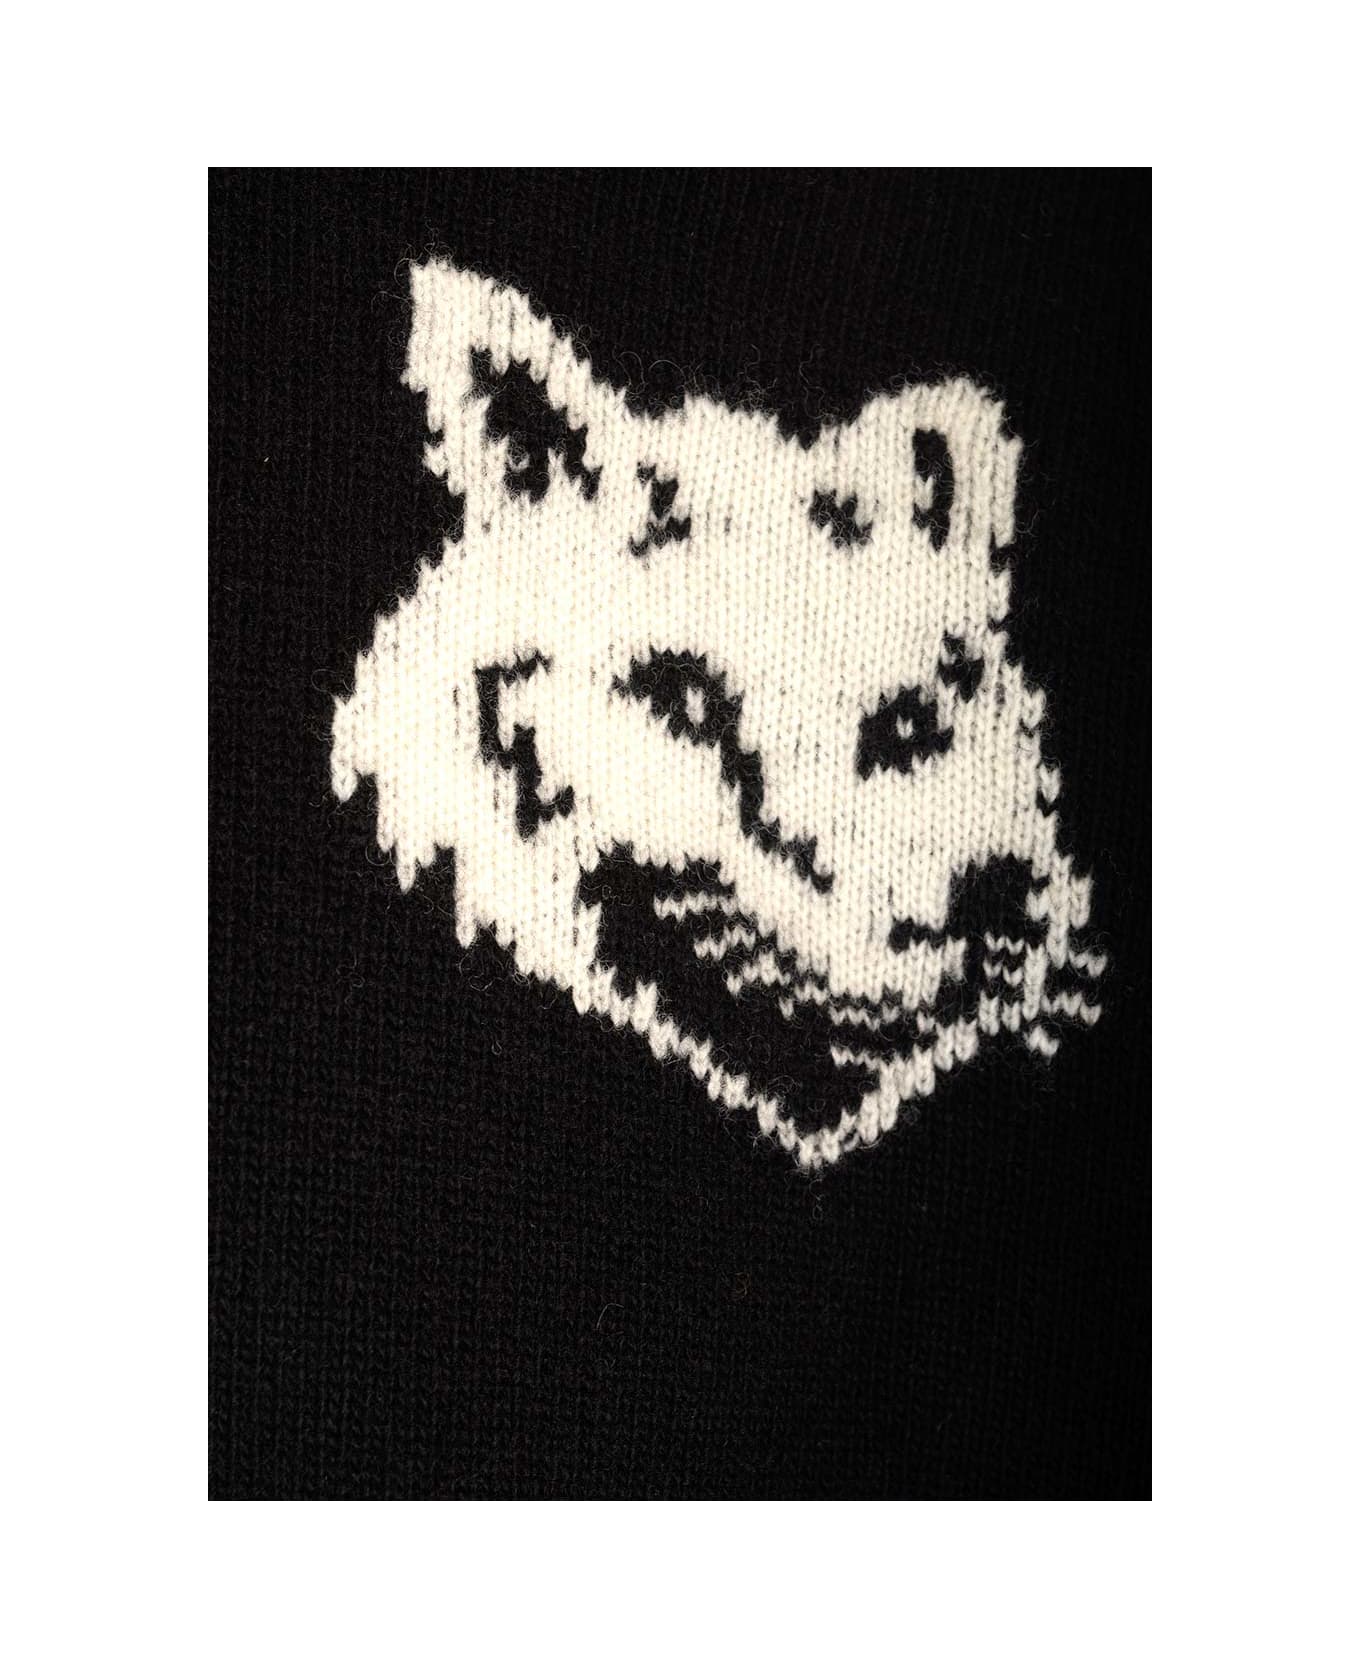 Maison Kitsuné Wool Sweater - BLACK ニットウェア